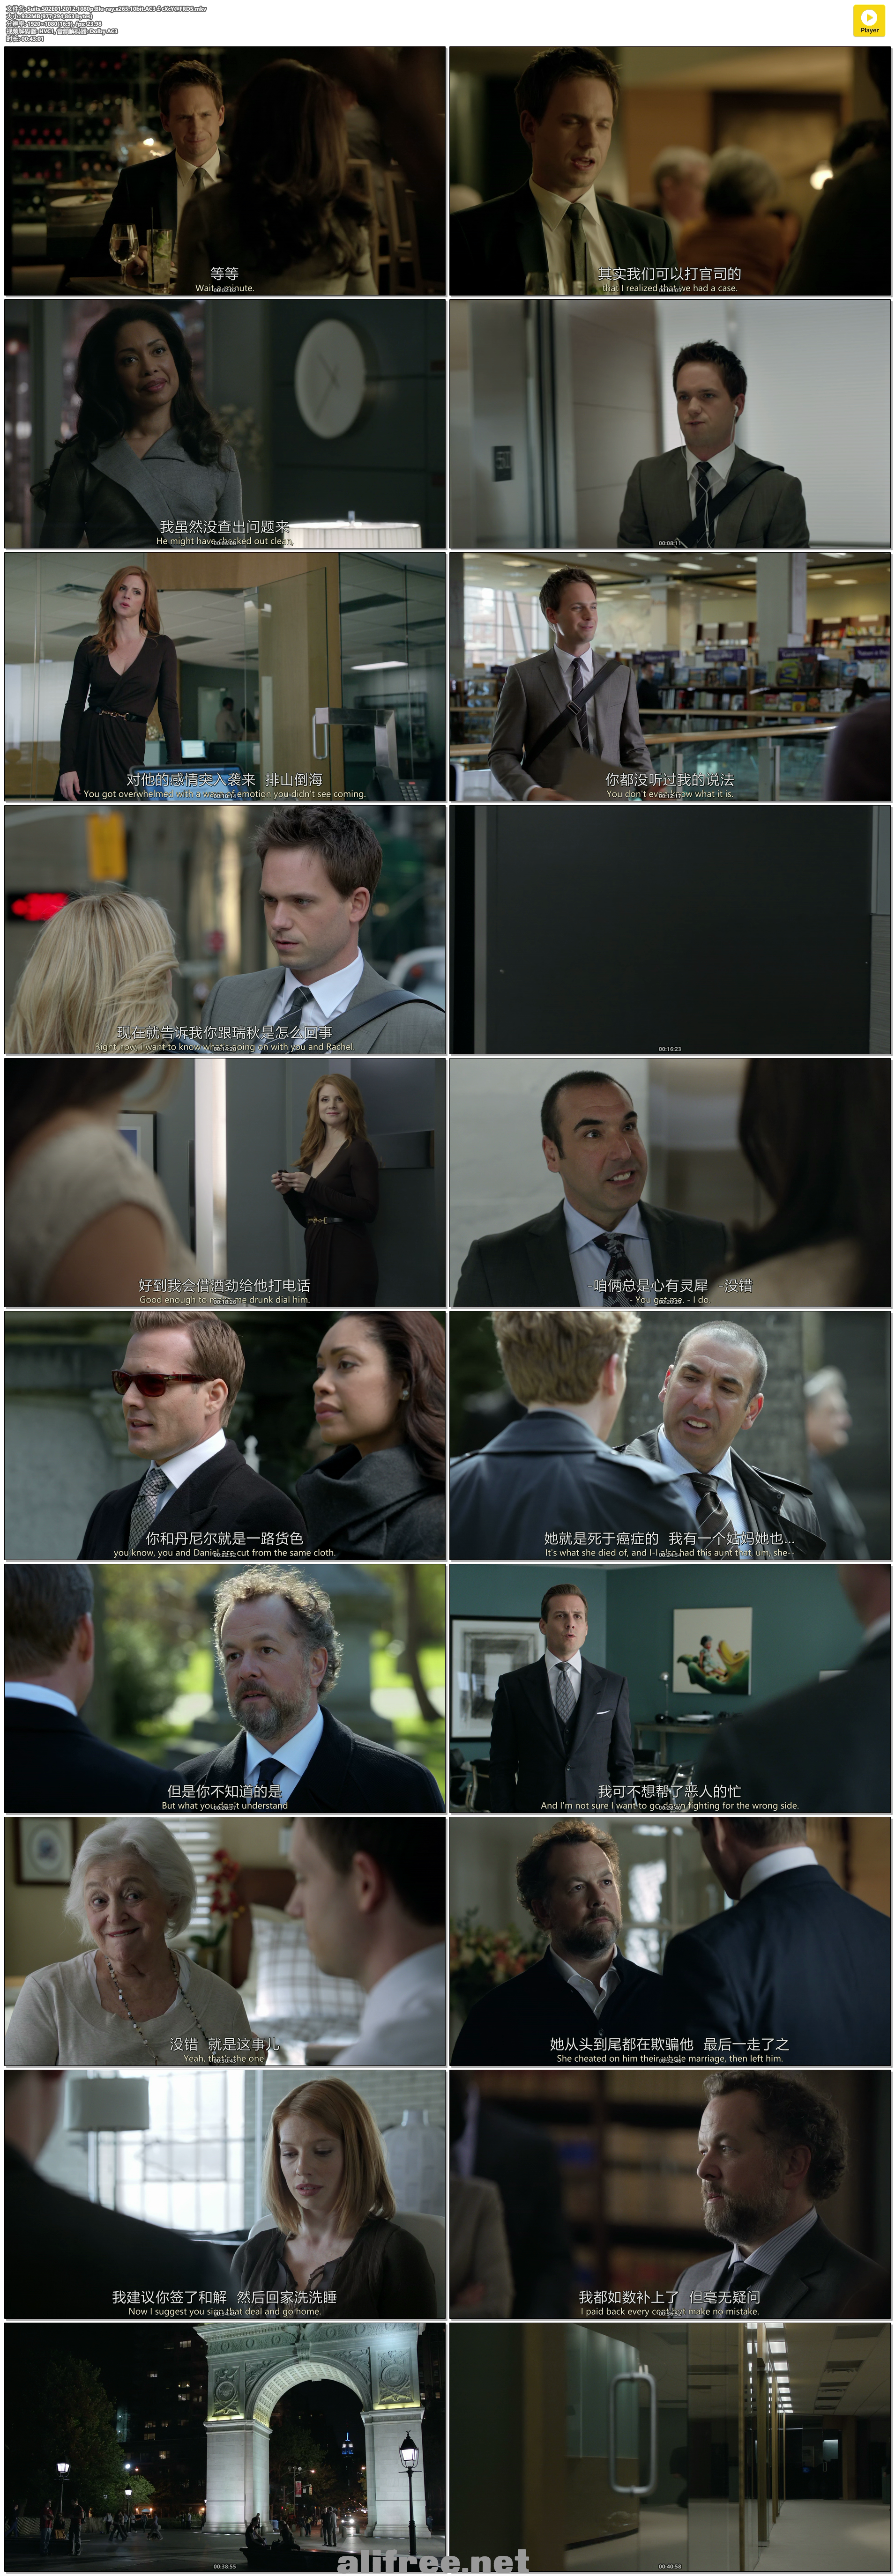 Suits.S02E01.2012.1080p.Blu-ray.x265.10bit.AC3￡cXcY@FRDS.mkv.png